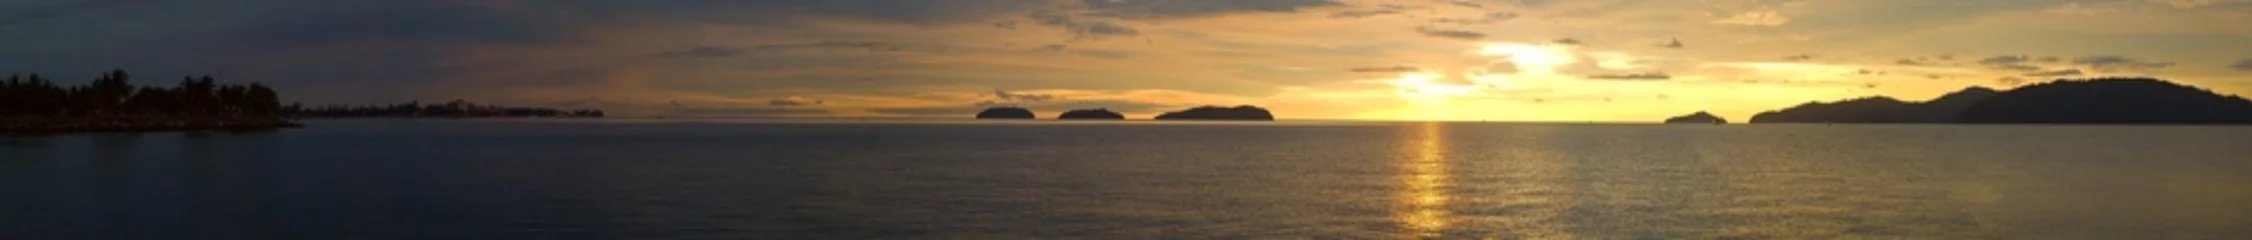 Abwaschbare Fototapete Meer / Ozean Ein ultraweiter Panoramablick auf einen goldenen Sonnenuntergangsozean